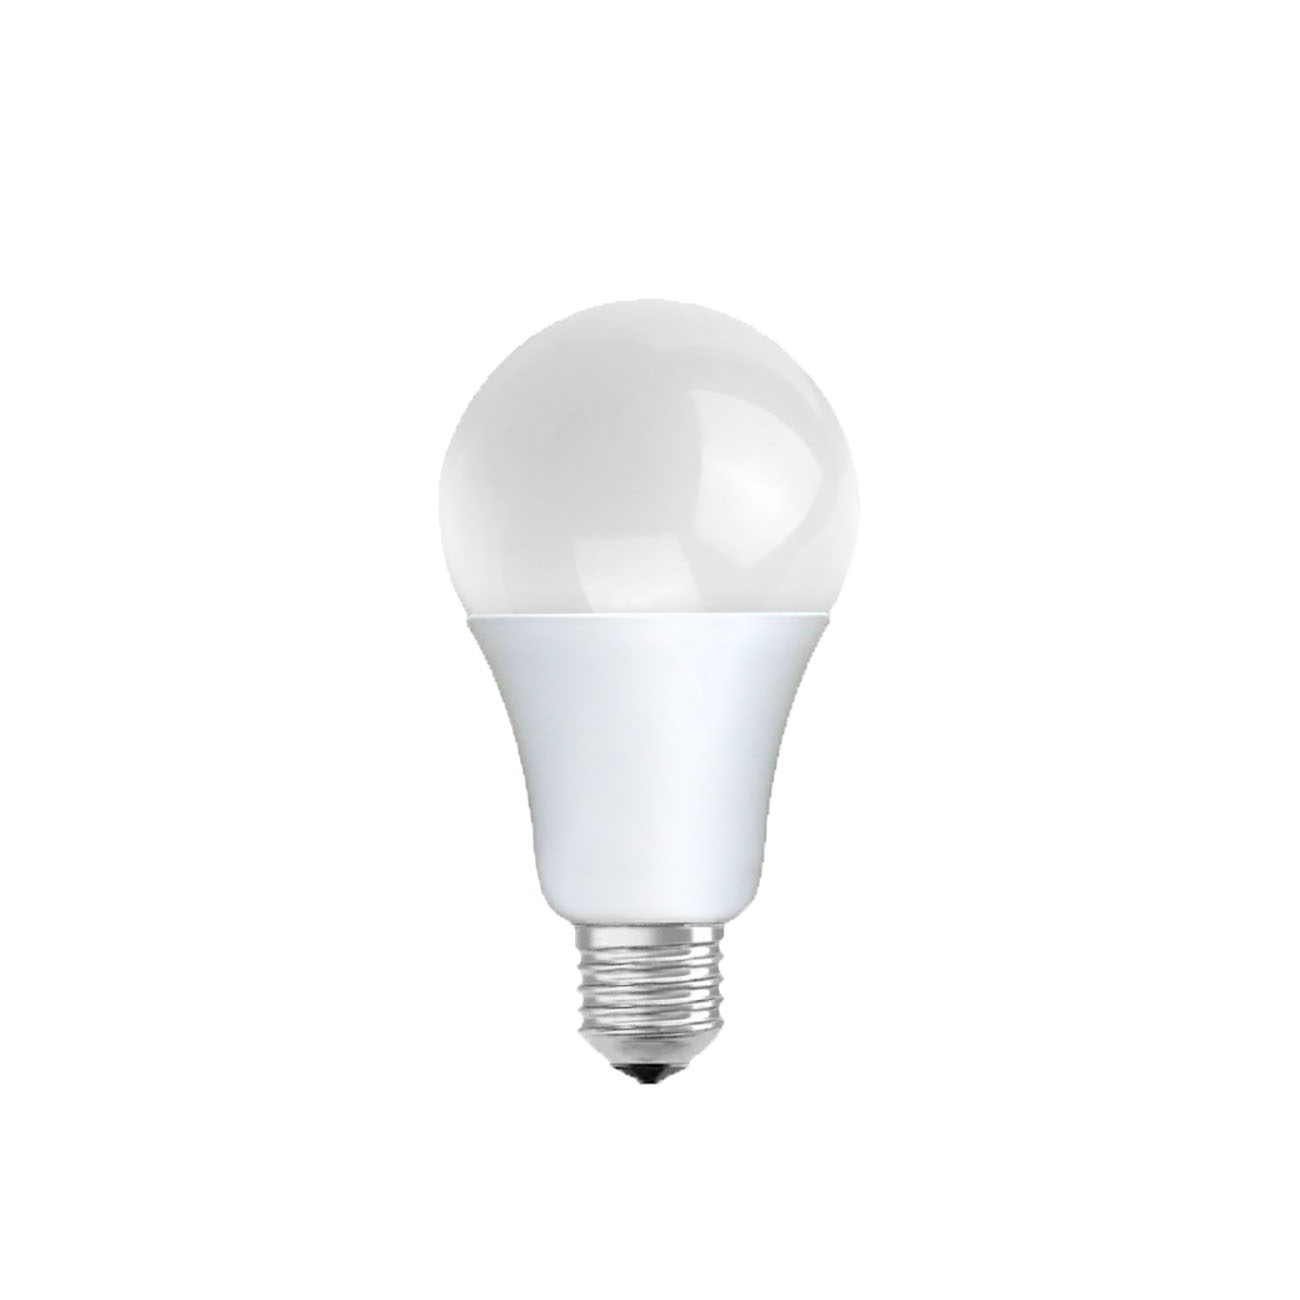 Фото Лампа LED Lamper «STANDARD» (A60, E27, 590 Lm) {601-623}